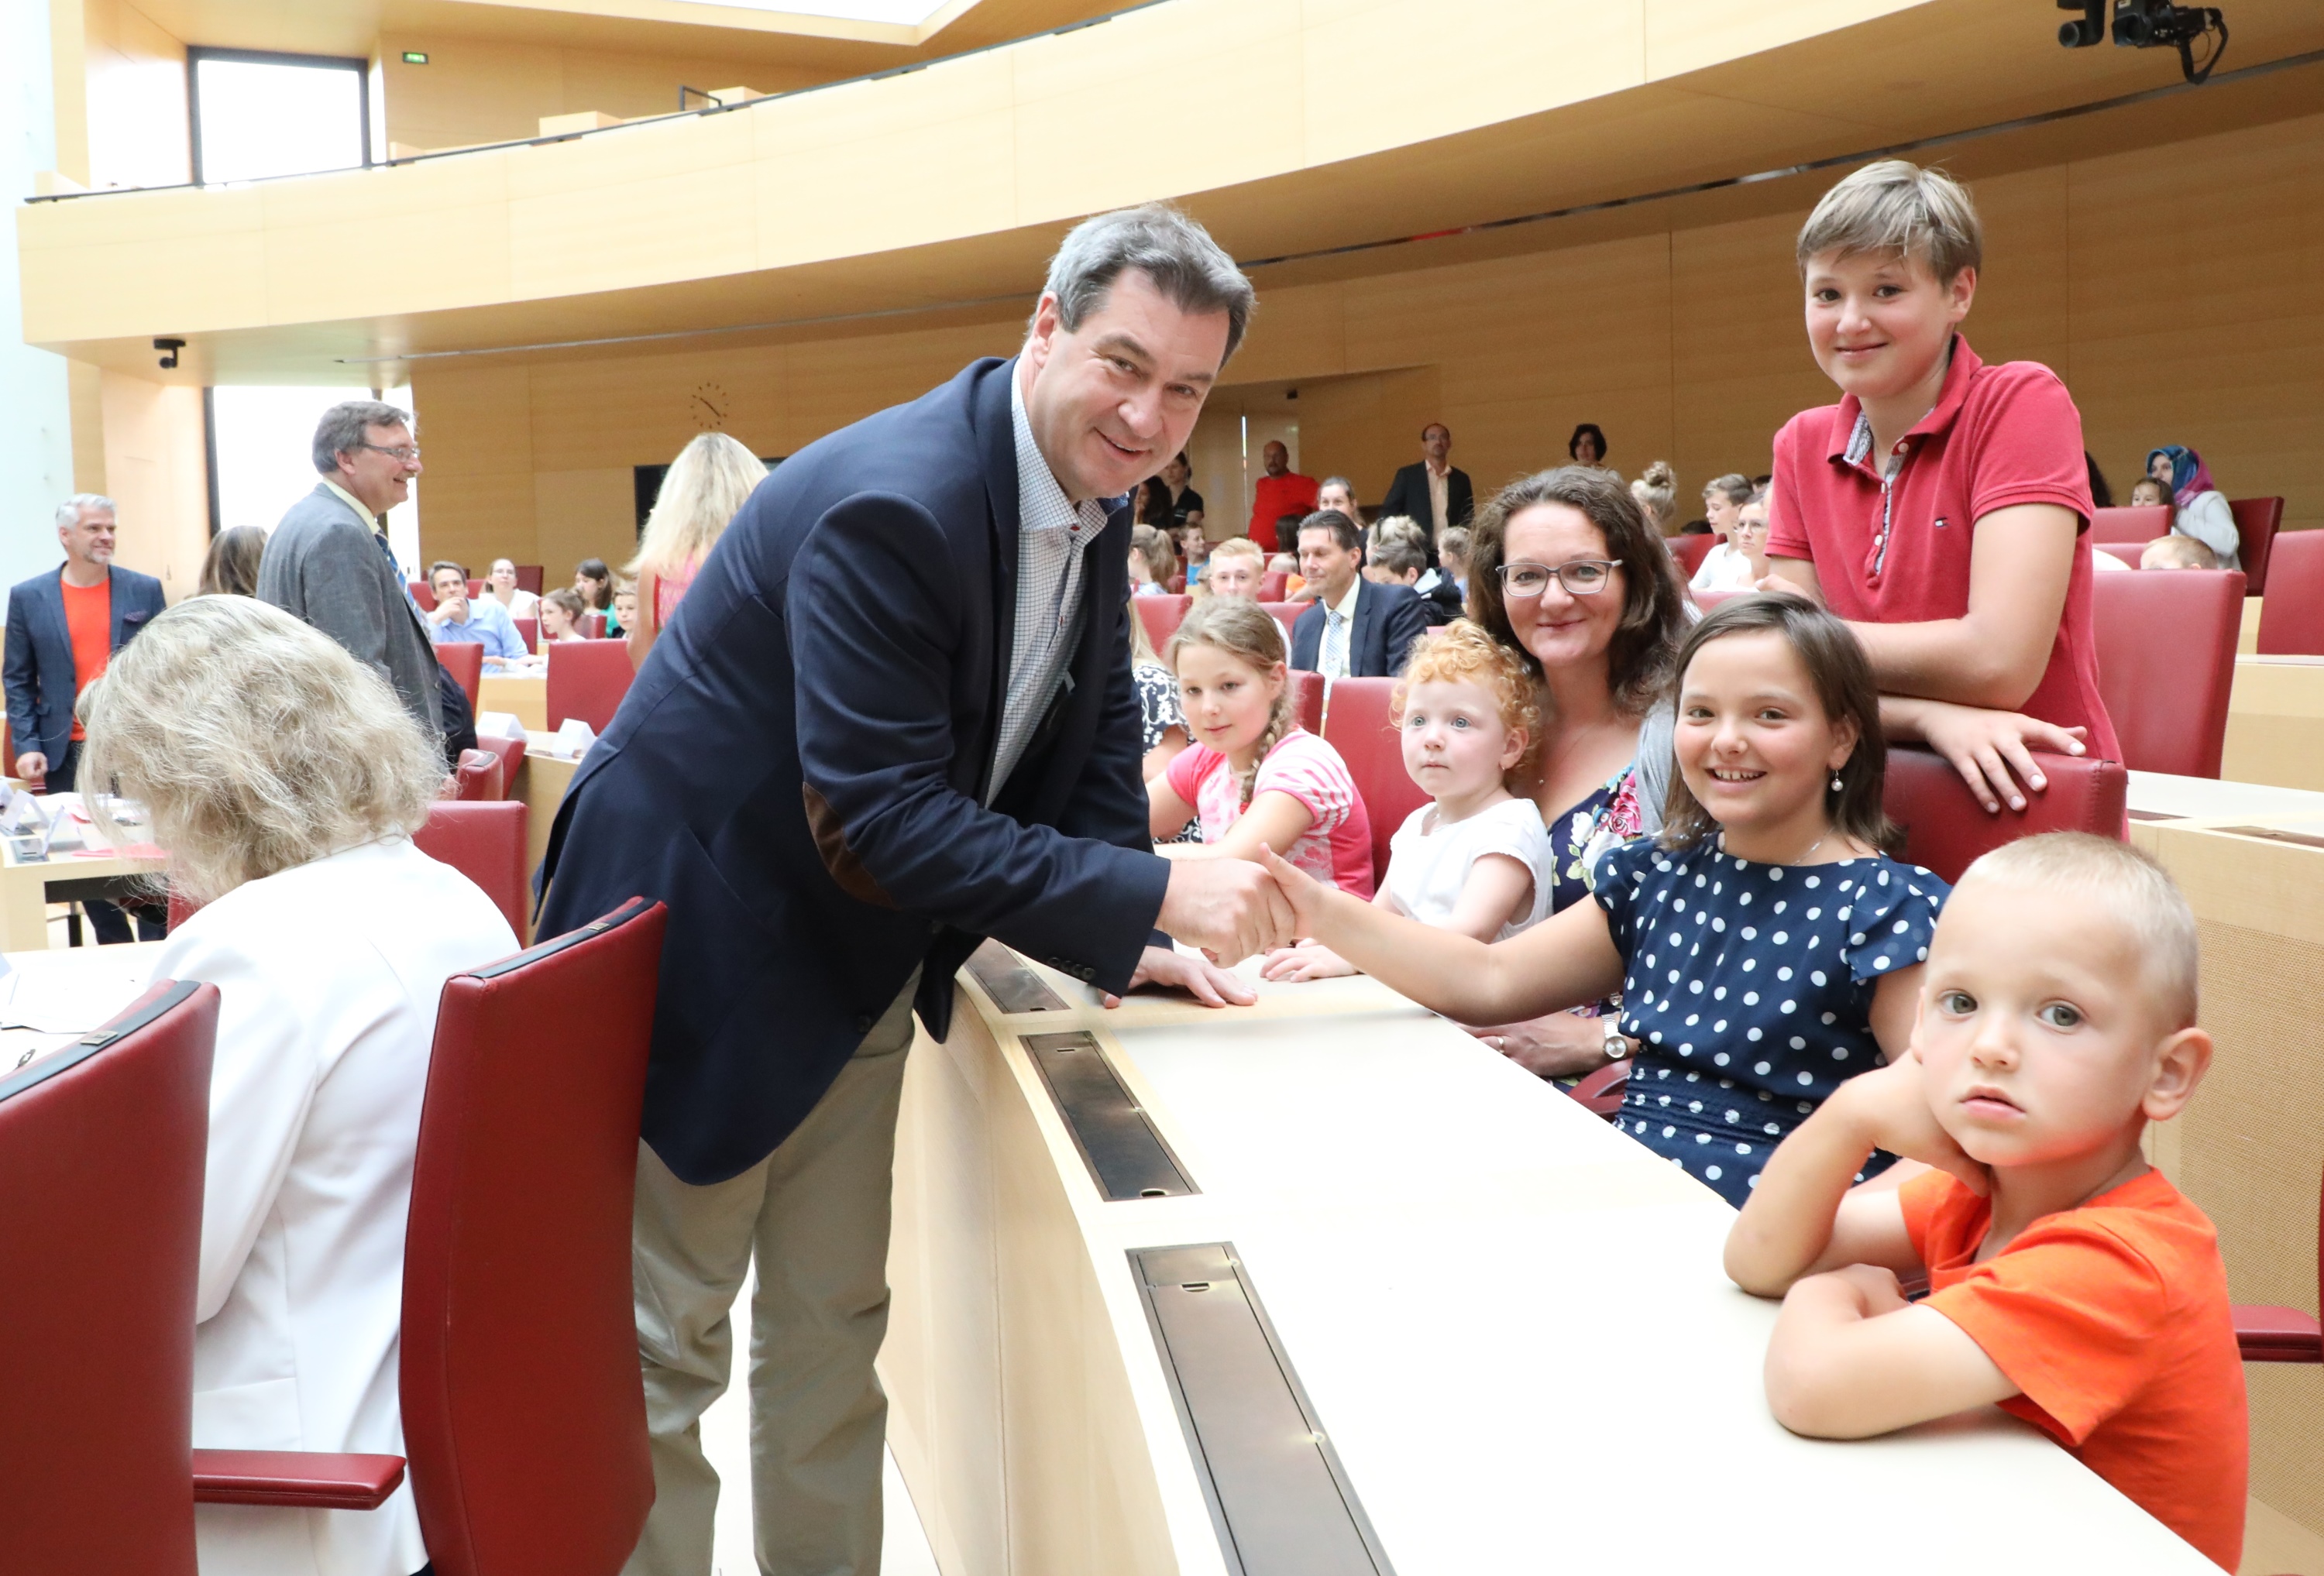 16.61.2018 - Familienfest 2018 - Auf Tuchfühlung mit den Kleinen: Ministerpräsident Dr. Markus Söder freut sich, dass so viele Familien mit Kindern der Einladung zur Veranstaltung gefolgt sind. (Foto: CSU-Fraktion)